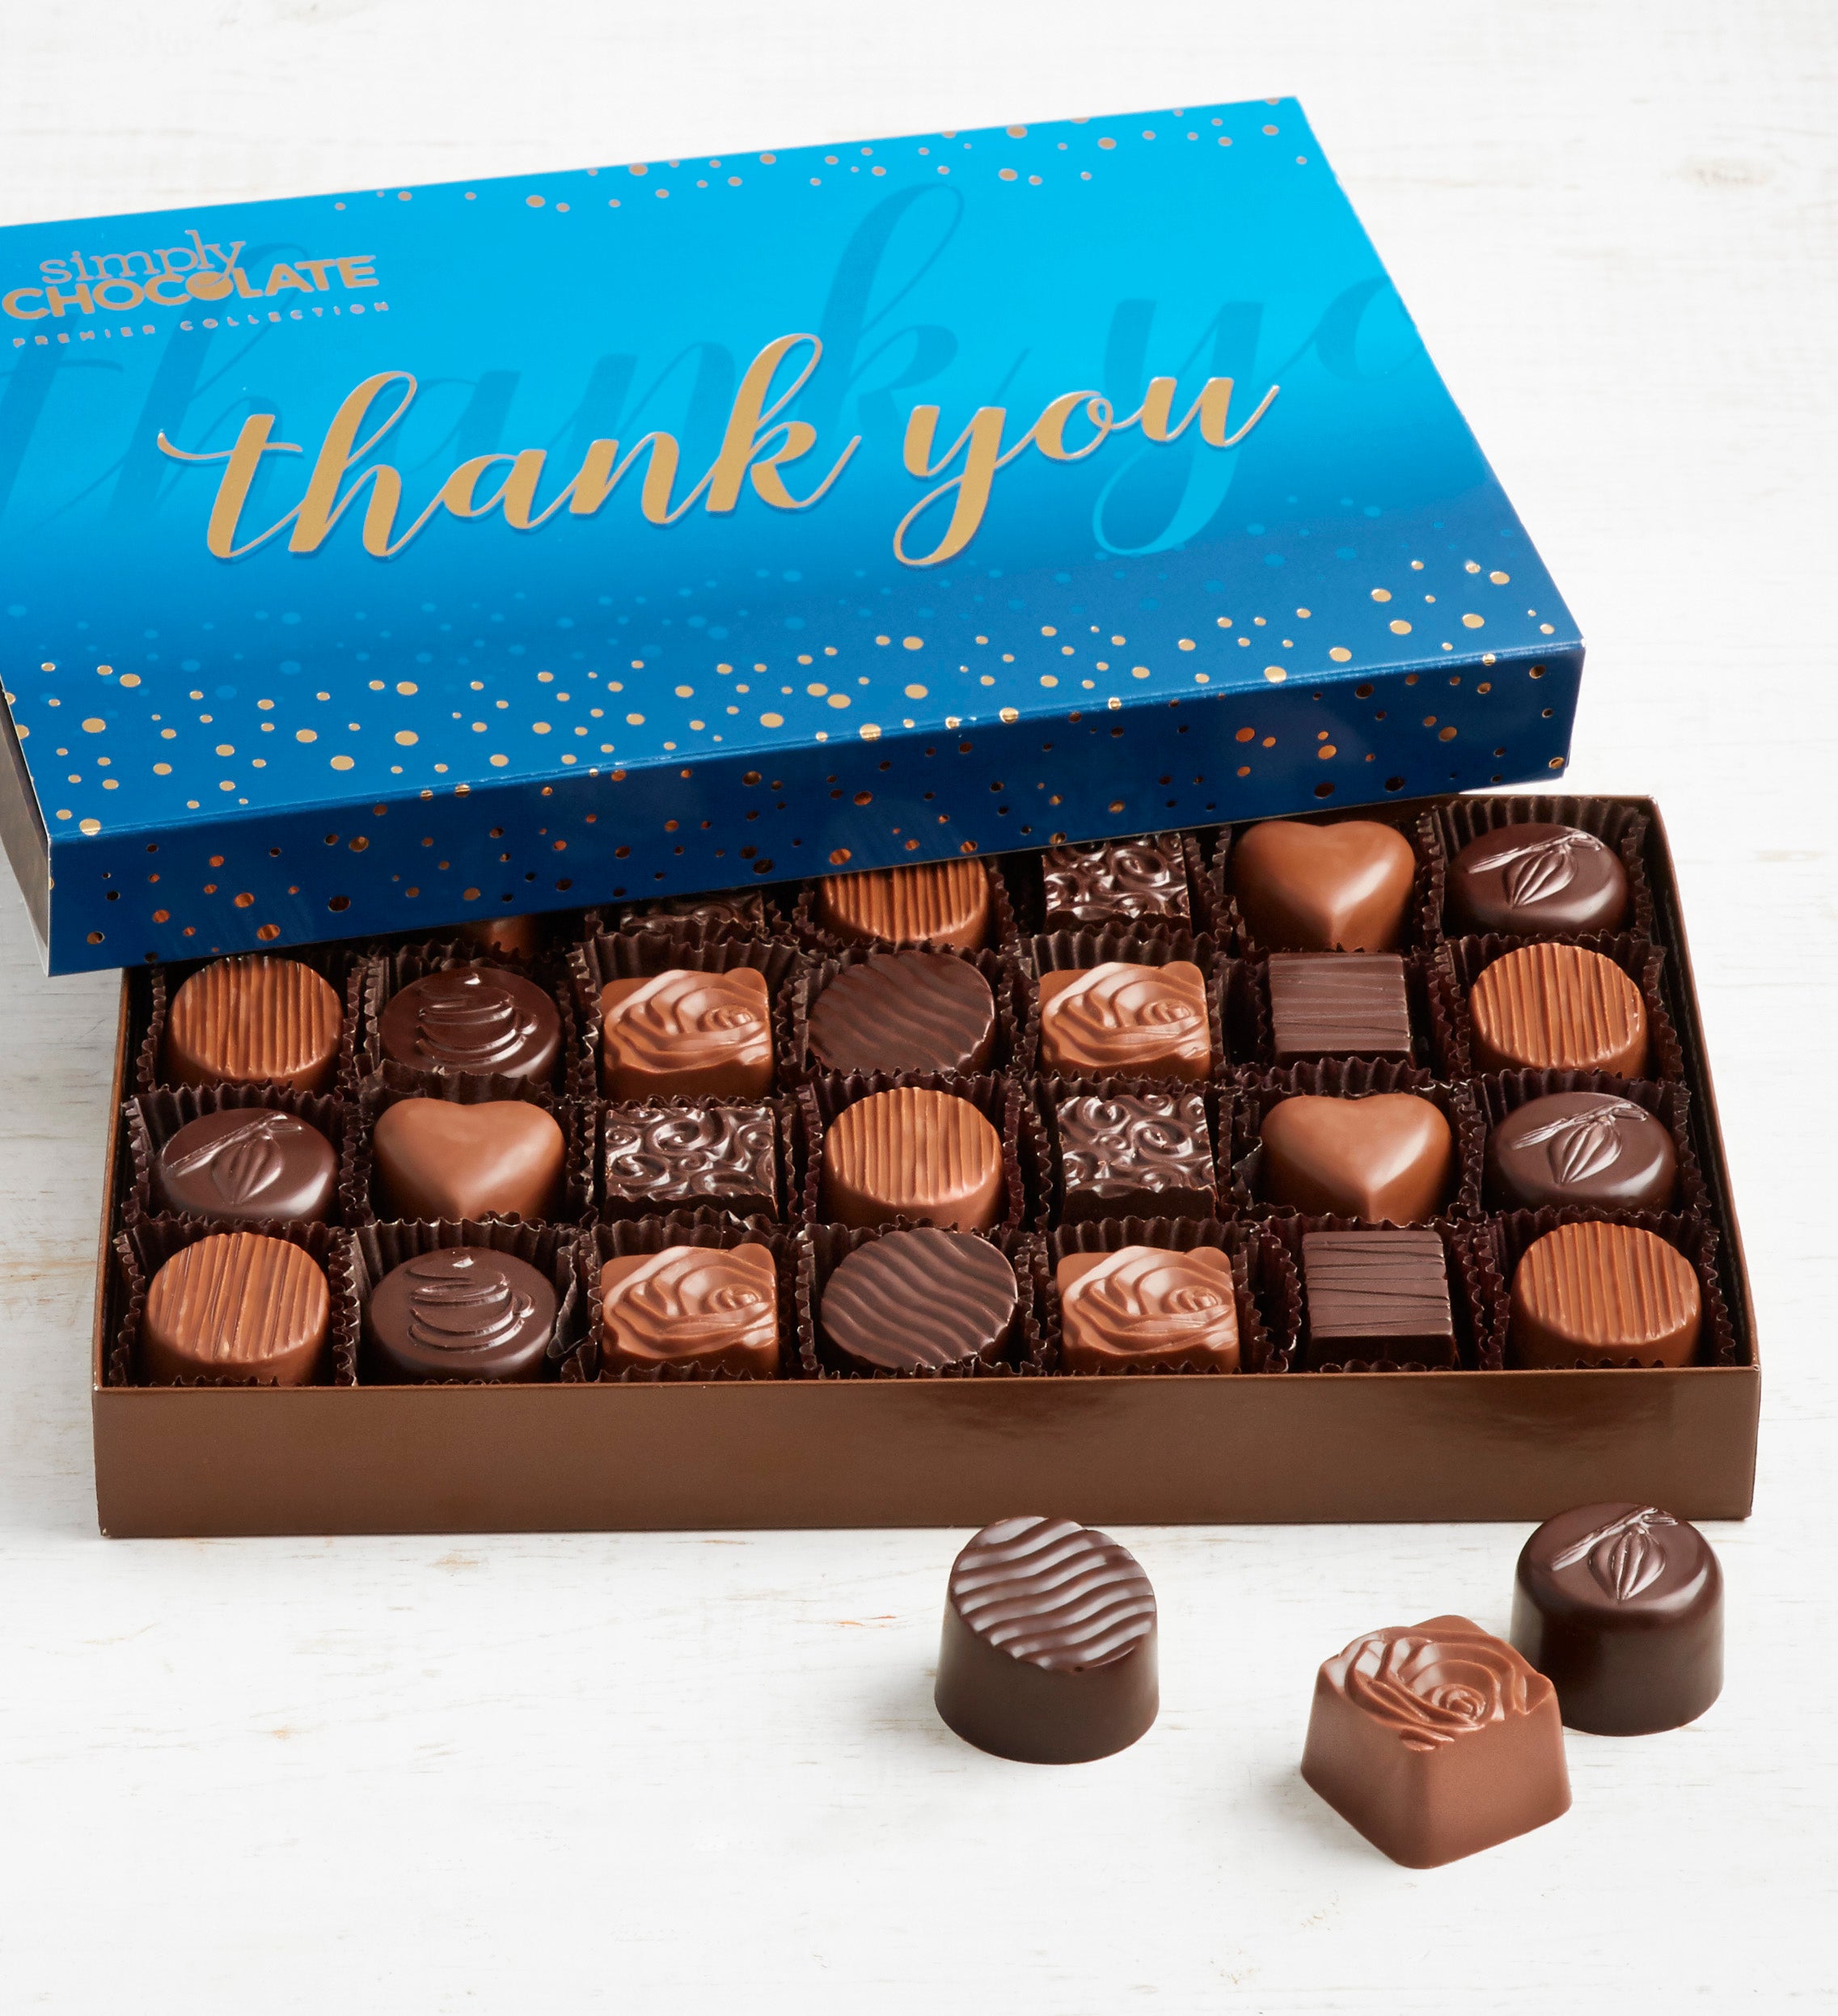 Thank you chocolates uk